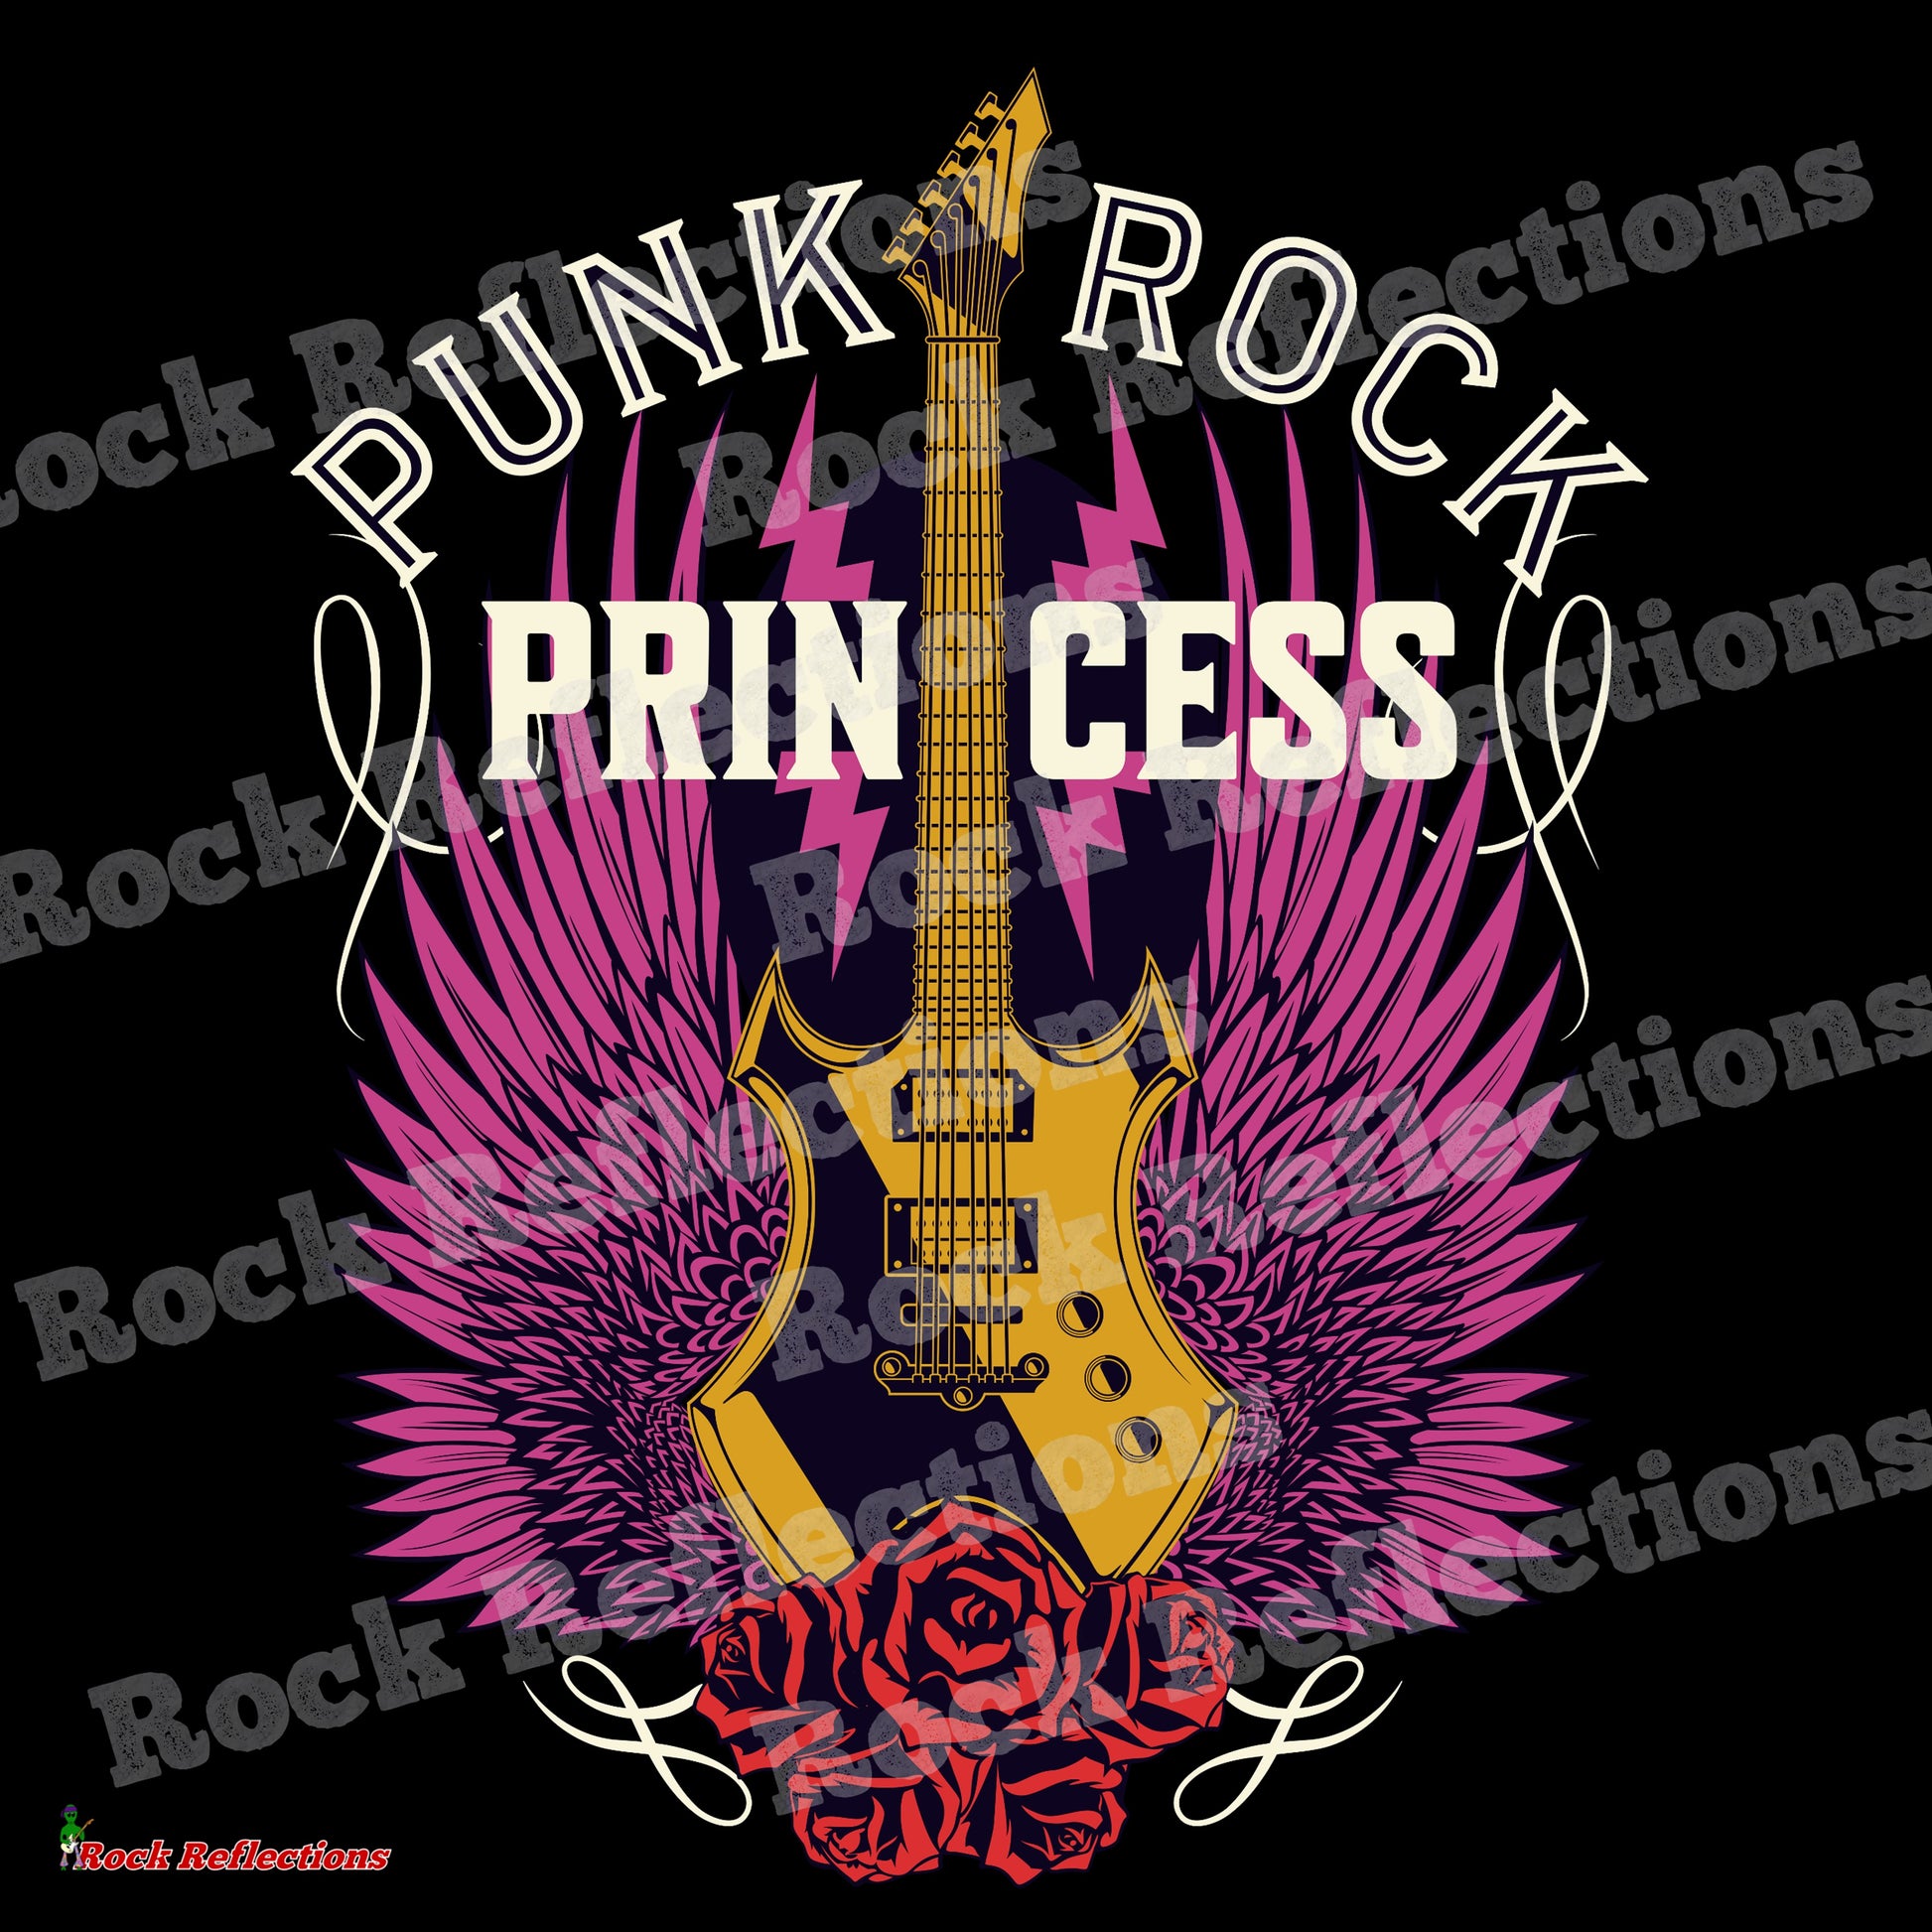 Punk Rock Princess Black Mug CustomCat